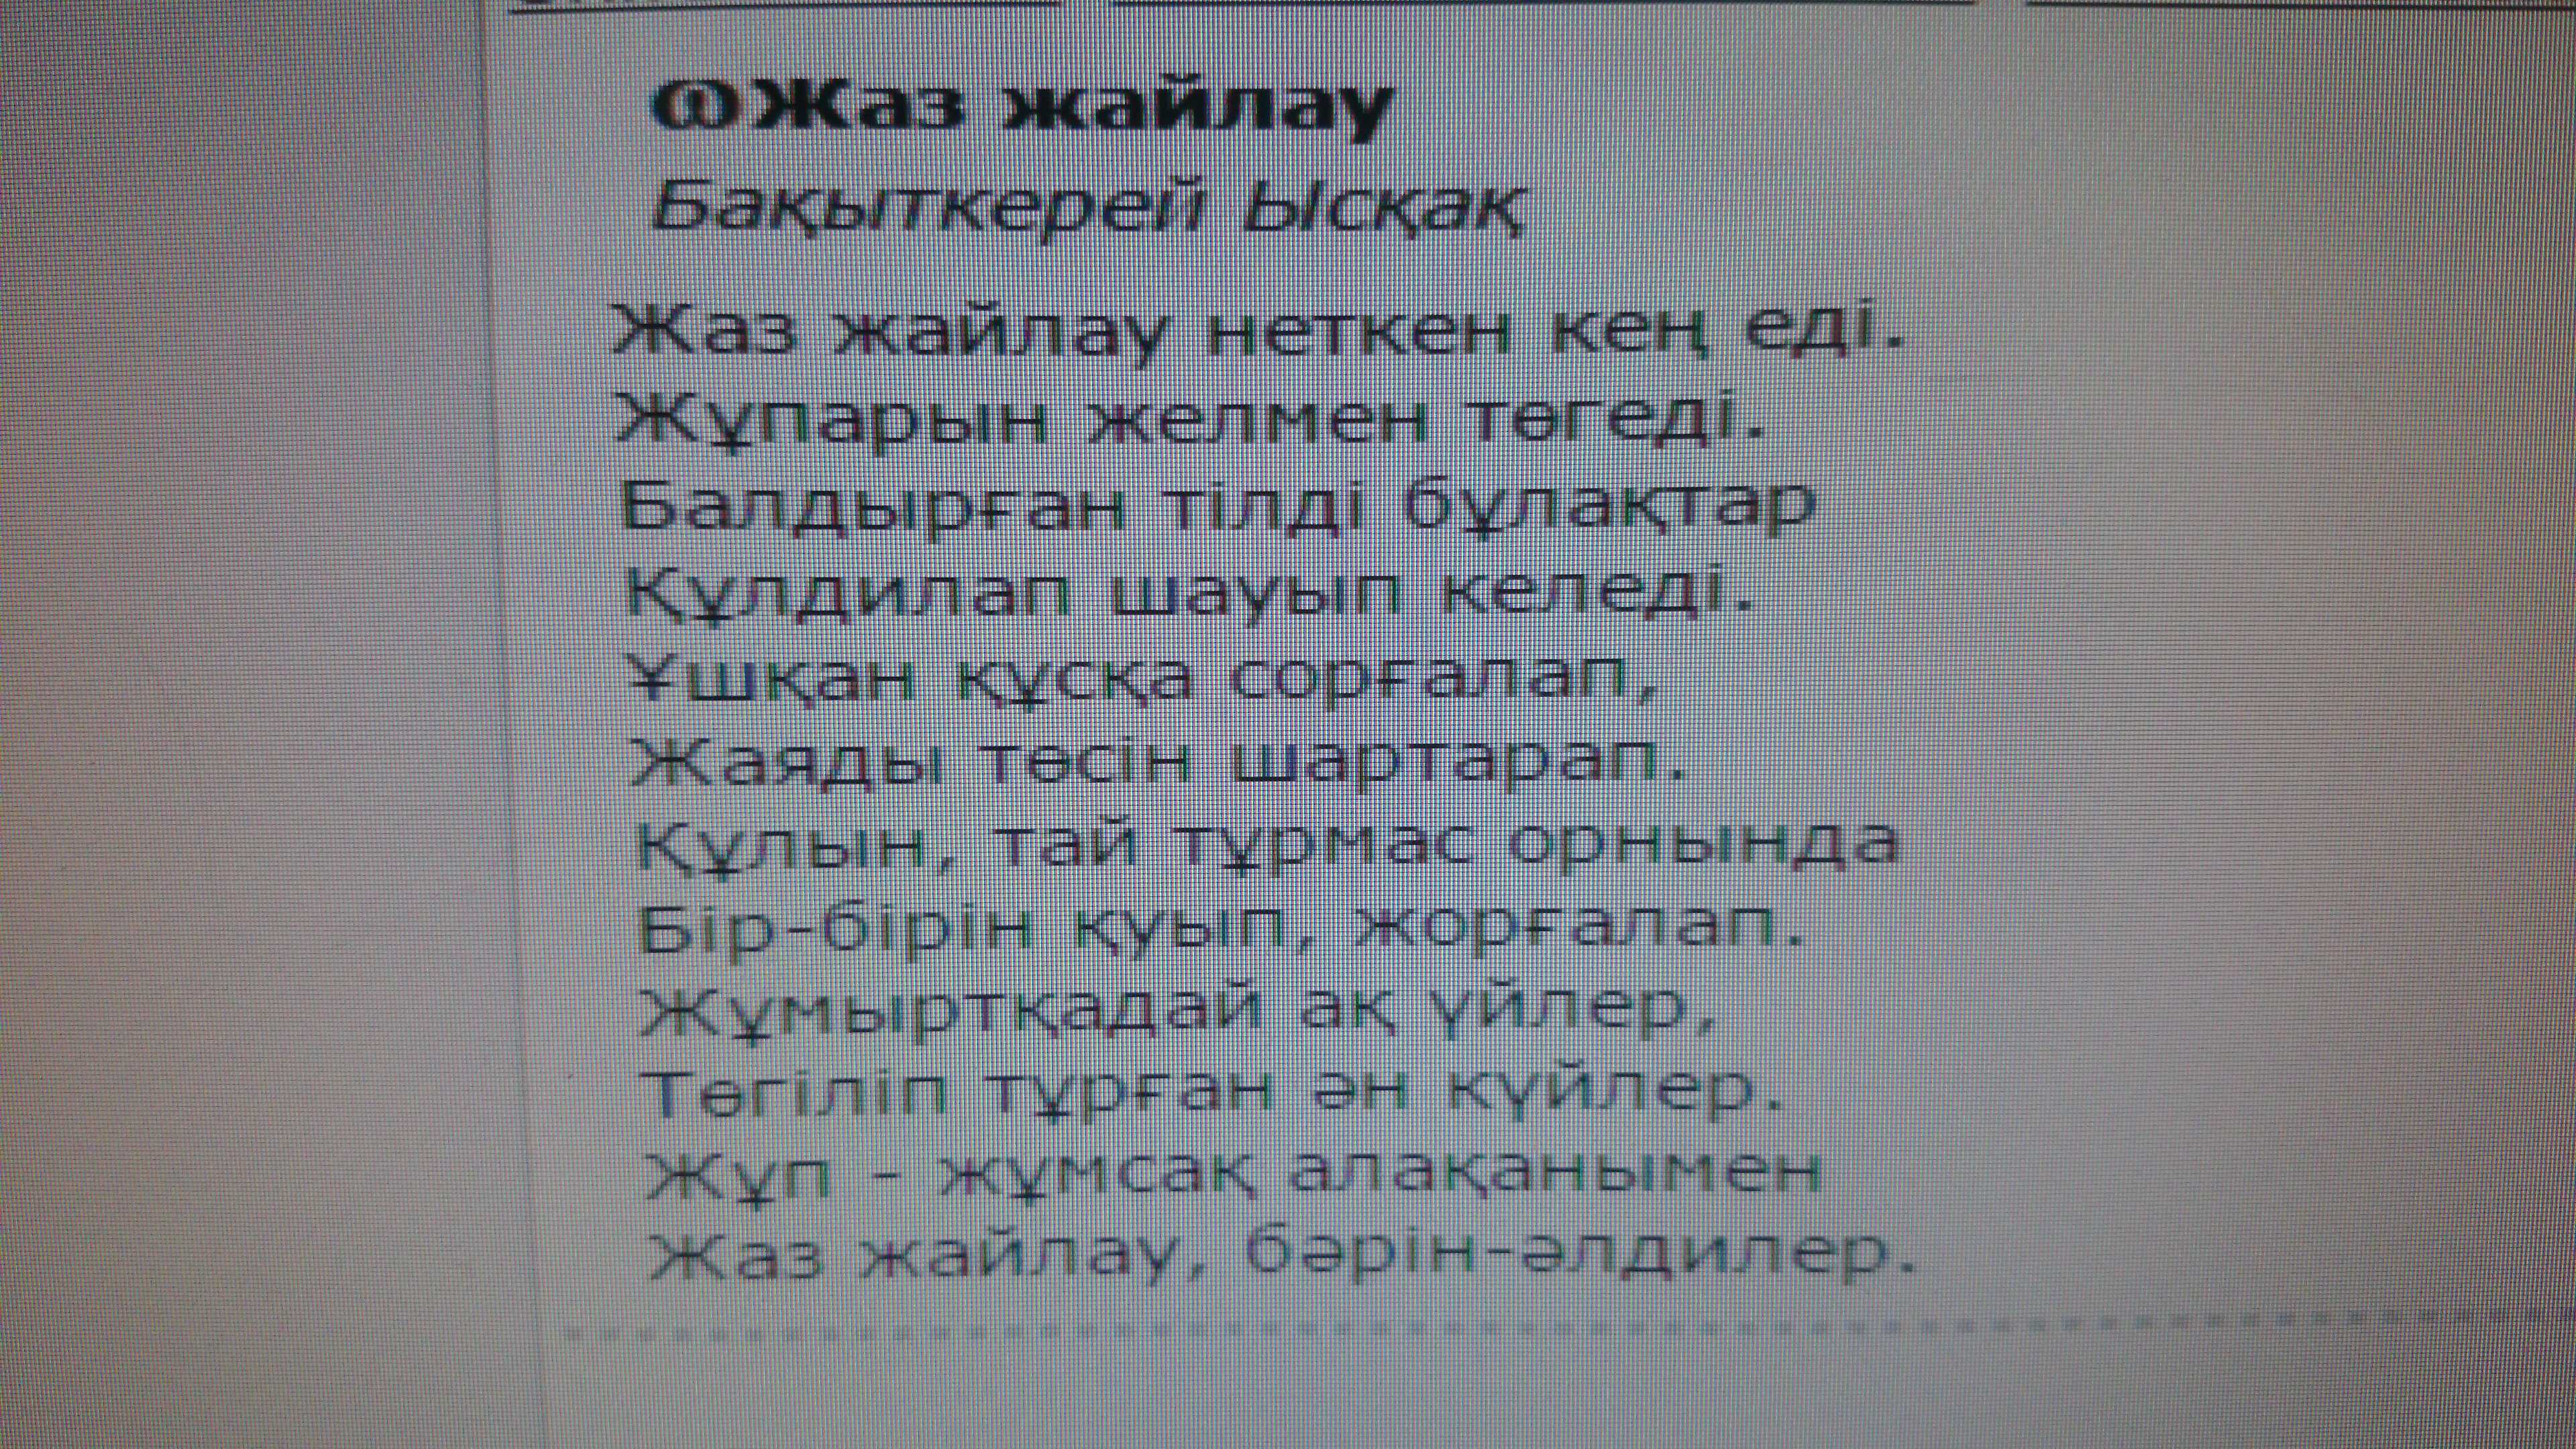 Стихи на казахском языке